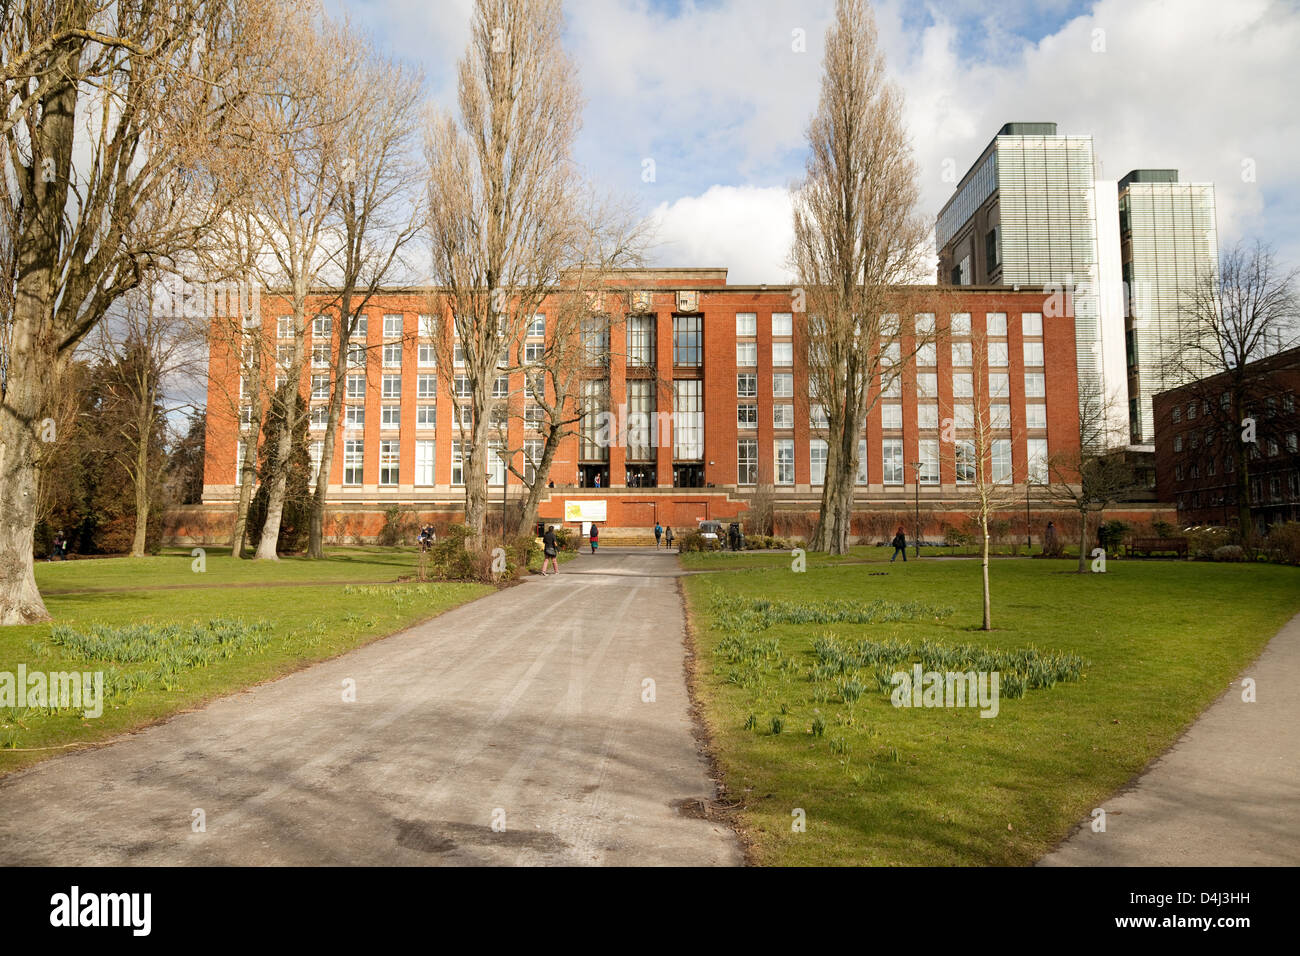 La principale biblioteca universitaria, Edgbaston campus, Università di Birmingham edificio della biblioteca, REGNO UNITO Foto Stock